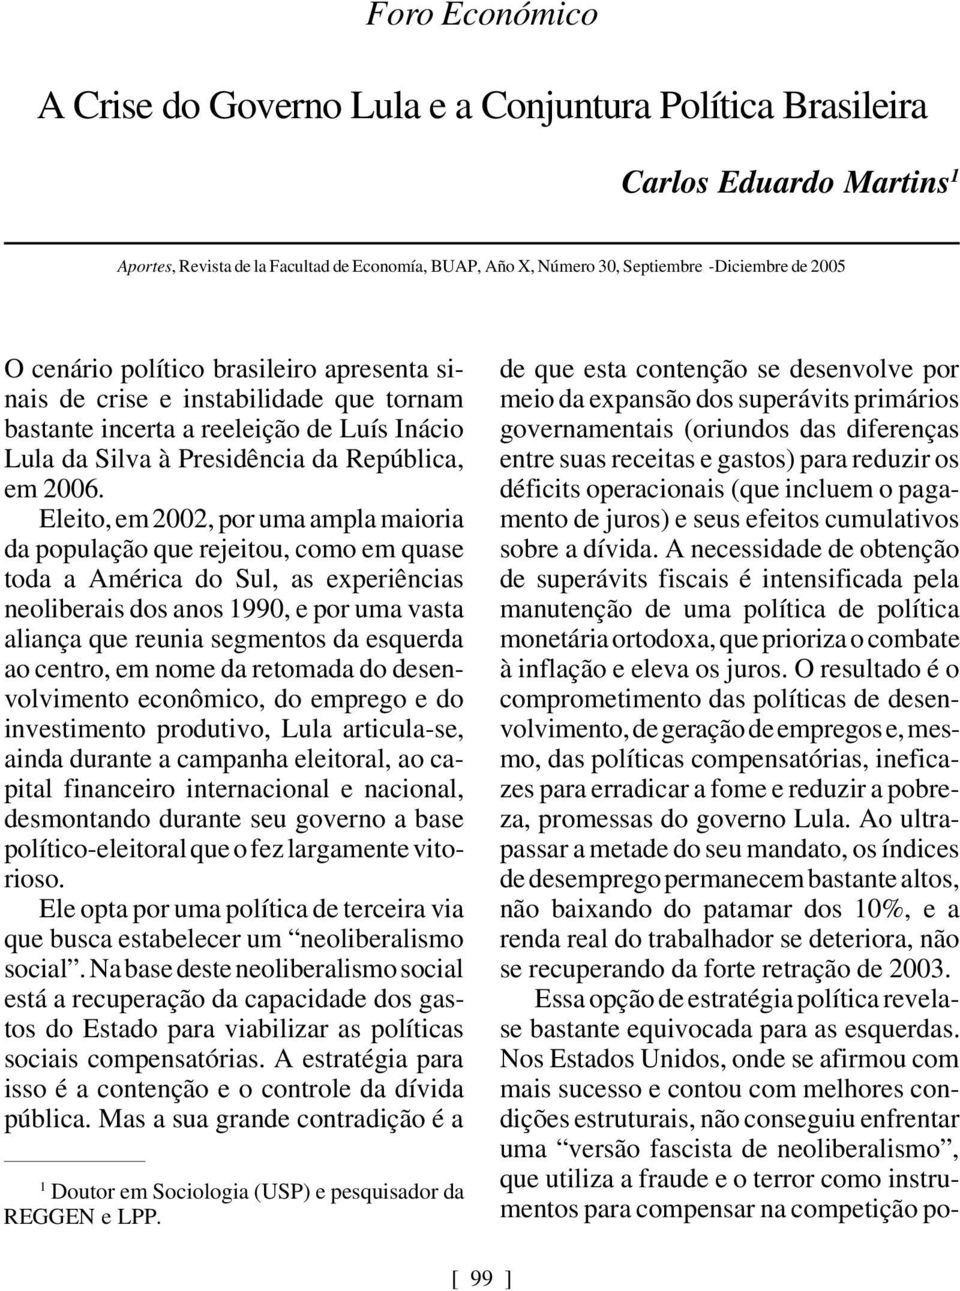 Eleito, em 2002, por uma ampla maioria da população que rejeitou, como em quase toda a América do Sul, as experiências neoliberais dos anos 1990, e por uma vasta aliança que reunia segmentos da